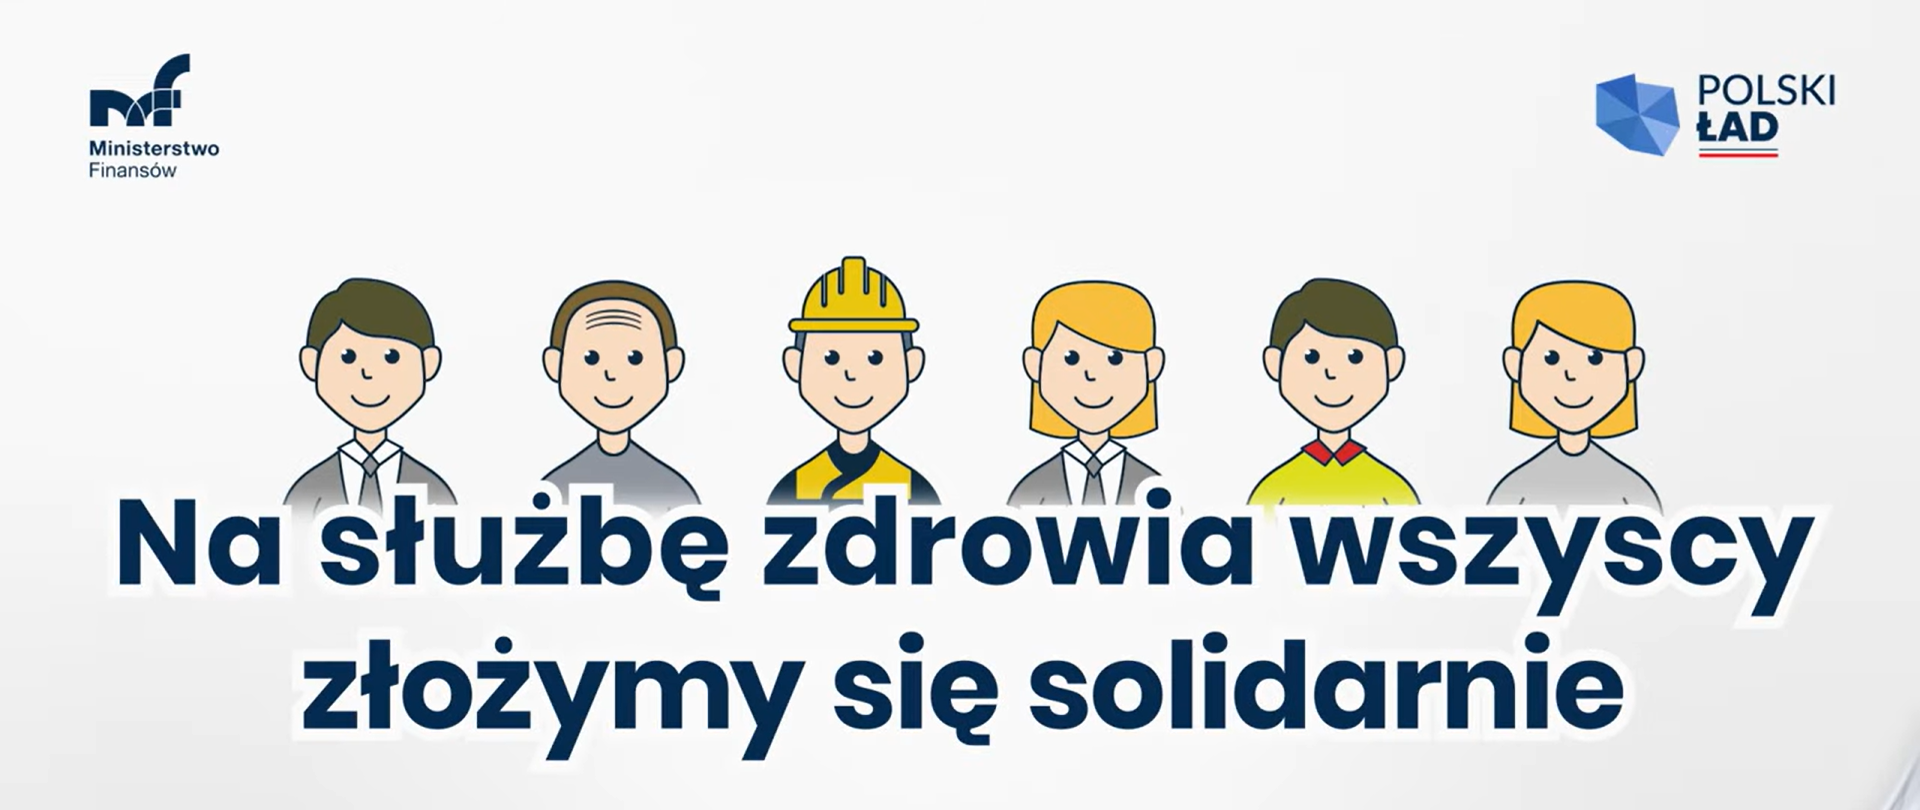 #PolskiŁad - sprawiedliwy system podatkowy